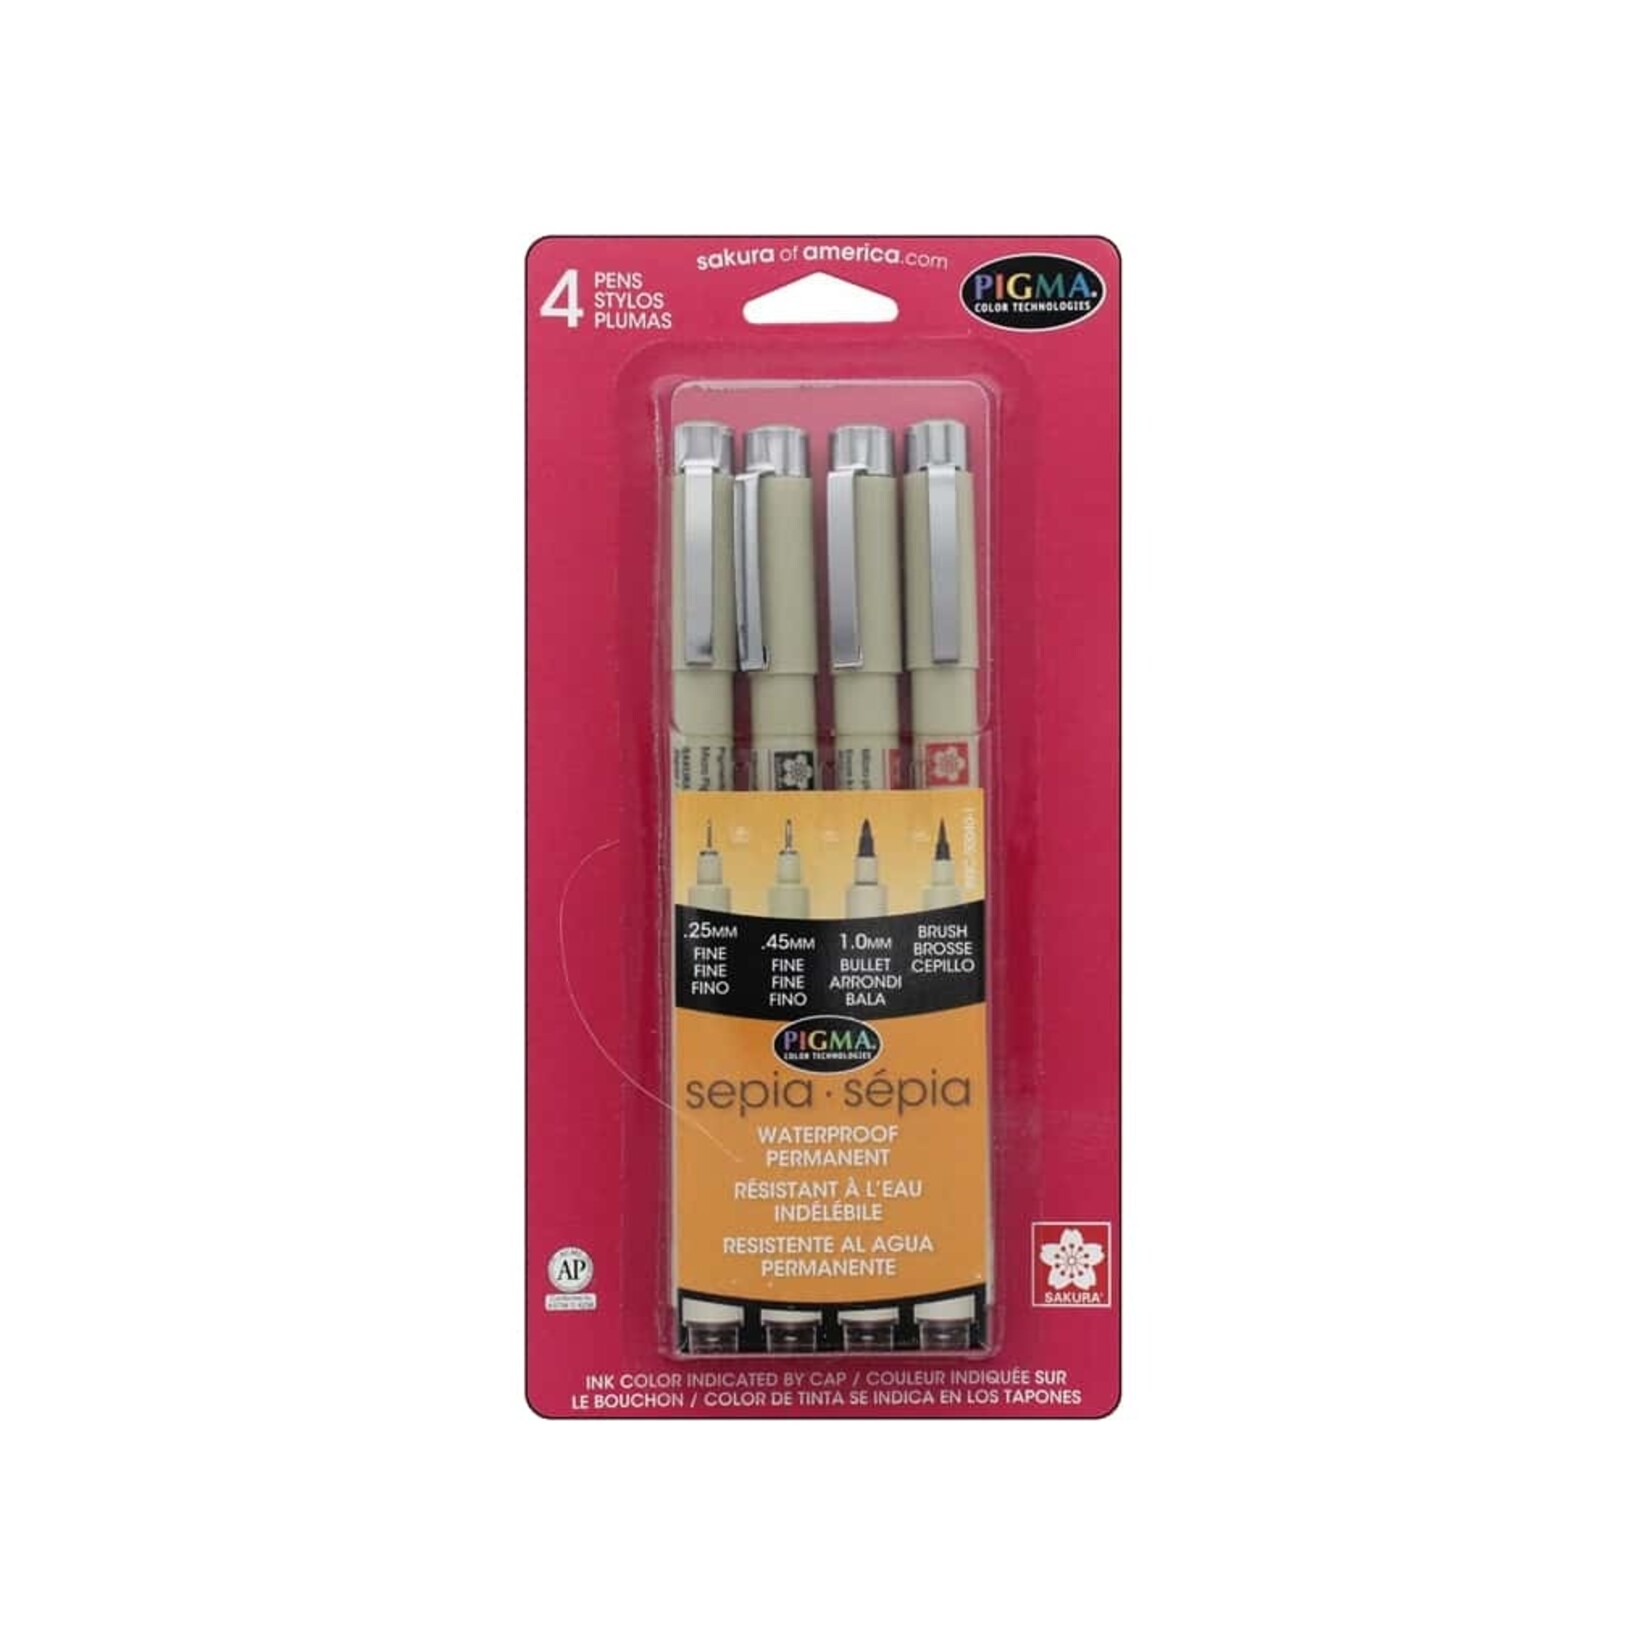 Sakura Sepia Pigma Brush, Graphic & Micron 4-Pen Set, 4 nib sizes